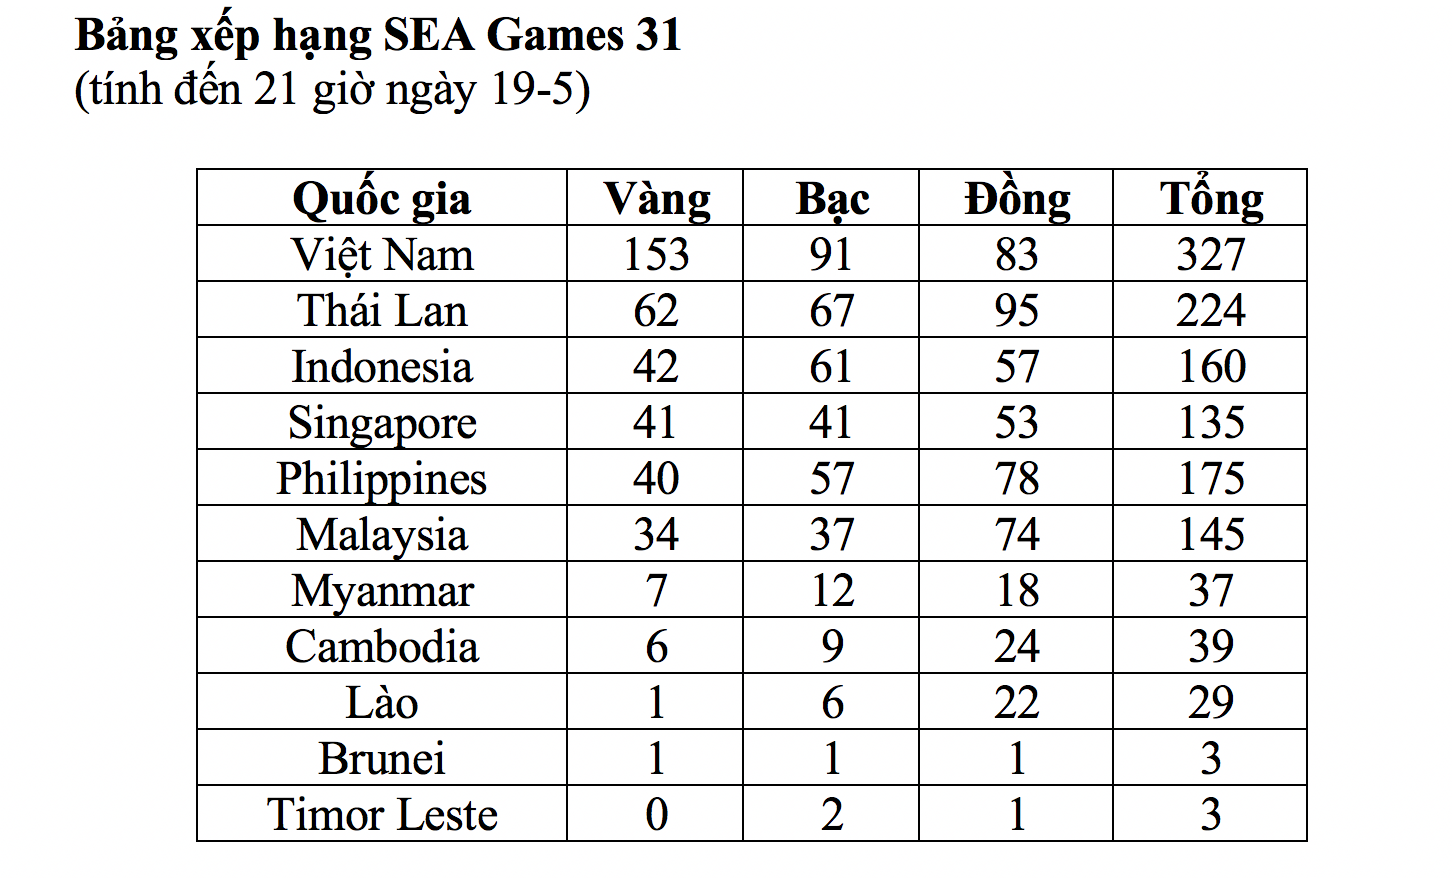 Nhật ký SEA Games 31 ngày 18-5: Giành thêm 21 HCV, chủ nhà vững ngôi đầu - Ảnh 2.